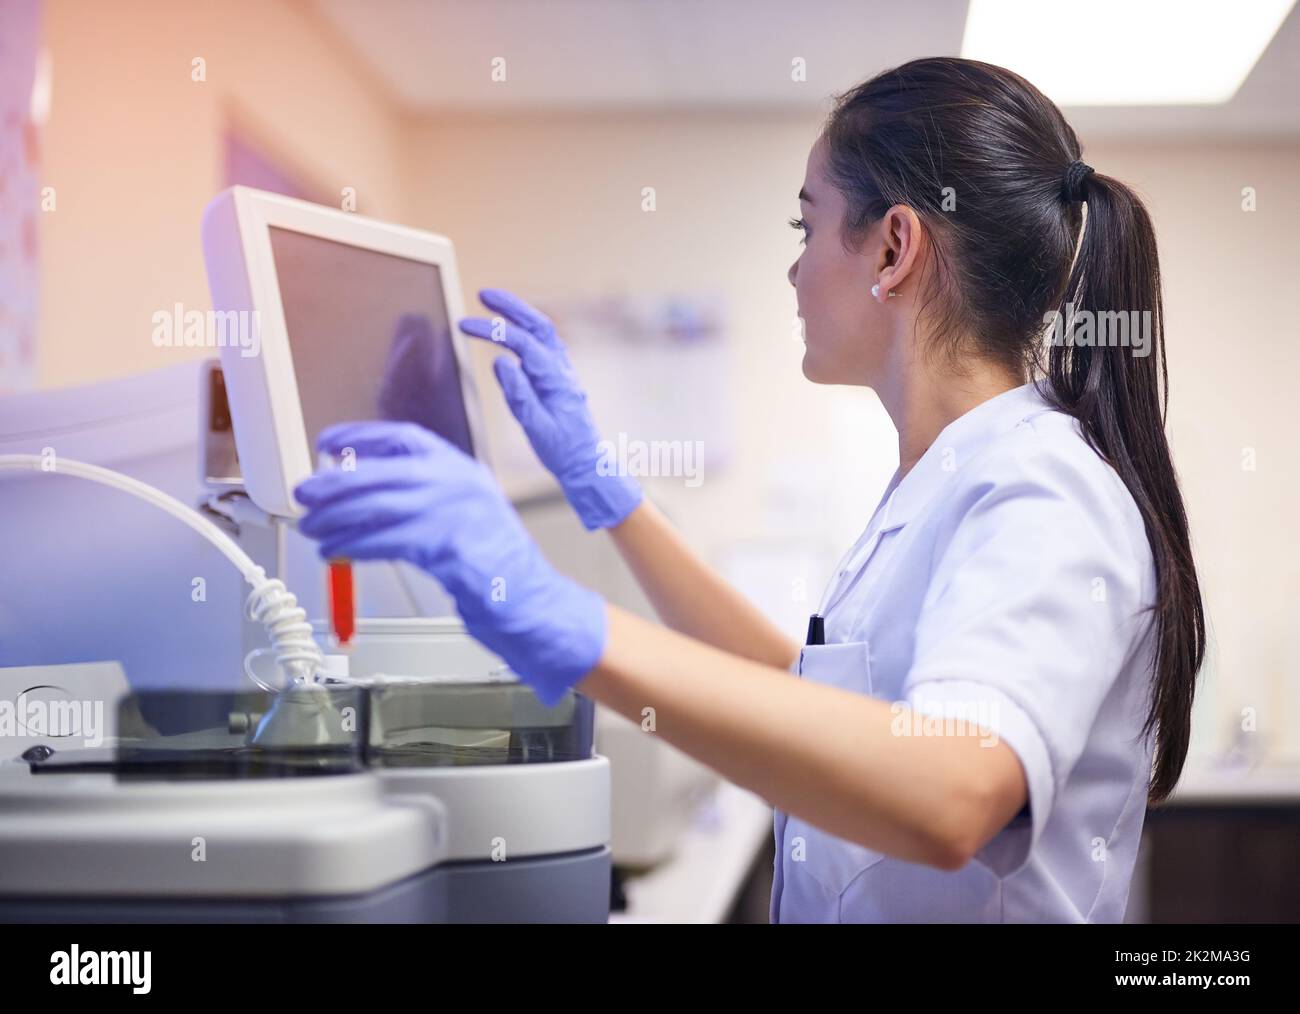 Soutenir la recherche scientifique avec des équipements de pointe. Photo d'un jeune scientifique utilisant un ordinateur pour effectuer un test médical en laboratoire. Banque D'Images